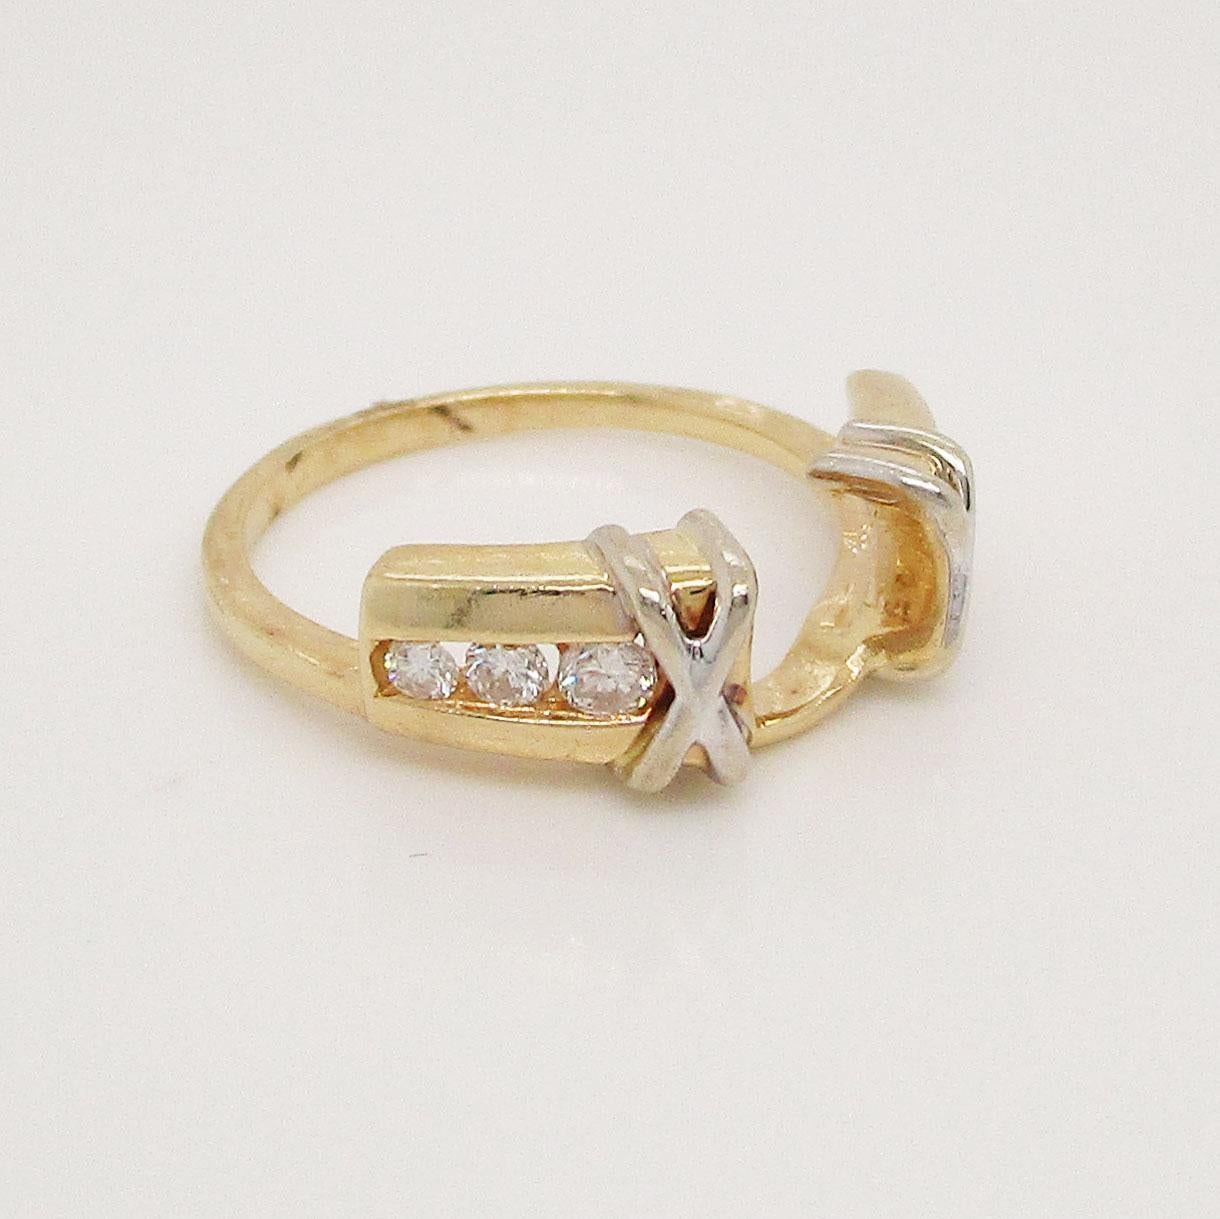 Ein Verlobungsring aus 14 Karat Weiß- und Gelbgold mit überlappenden Knoten auf der Vorderseite und einem Kanal mit abgestuften Diamanten auf den Schultern.  Sie ist für eine 6-polige Tiffany-Halterung ausgelegt. Stecken Sie einfach Ihren eleganten